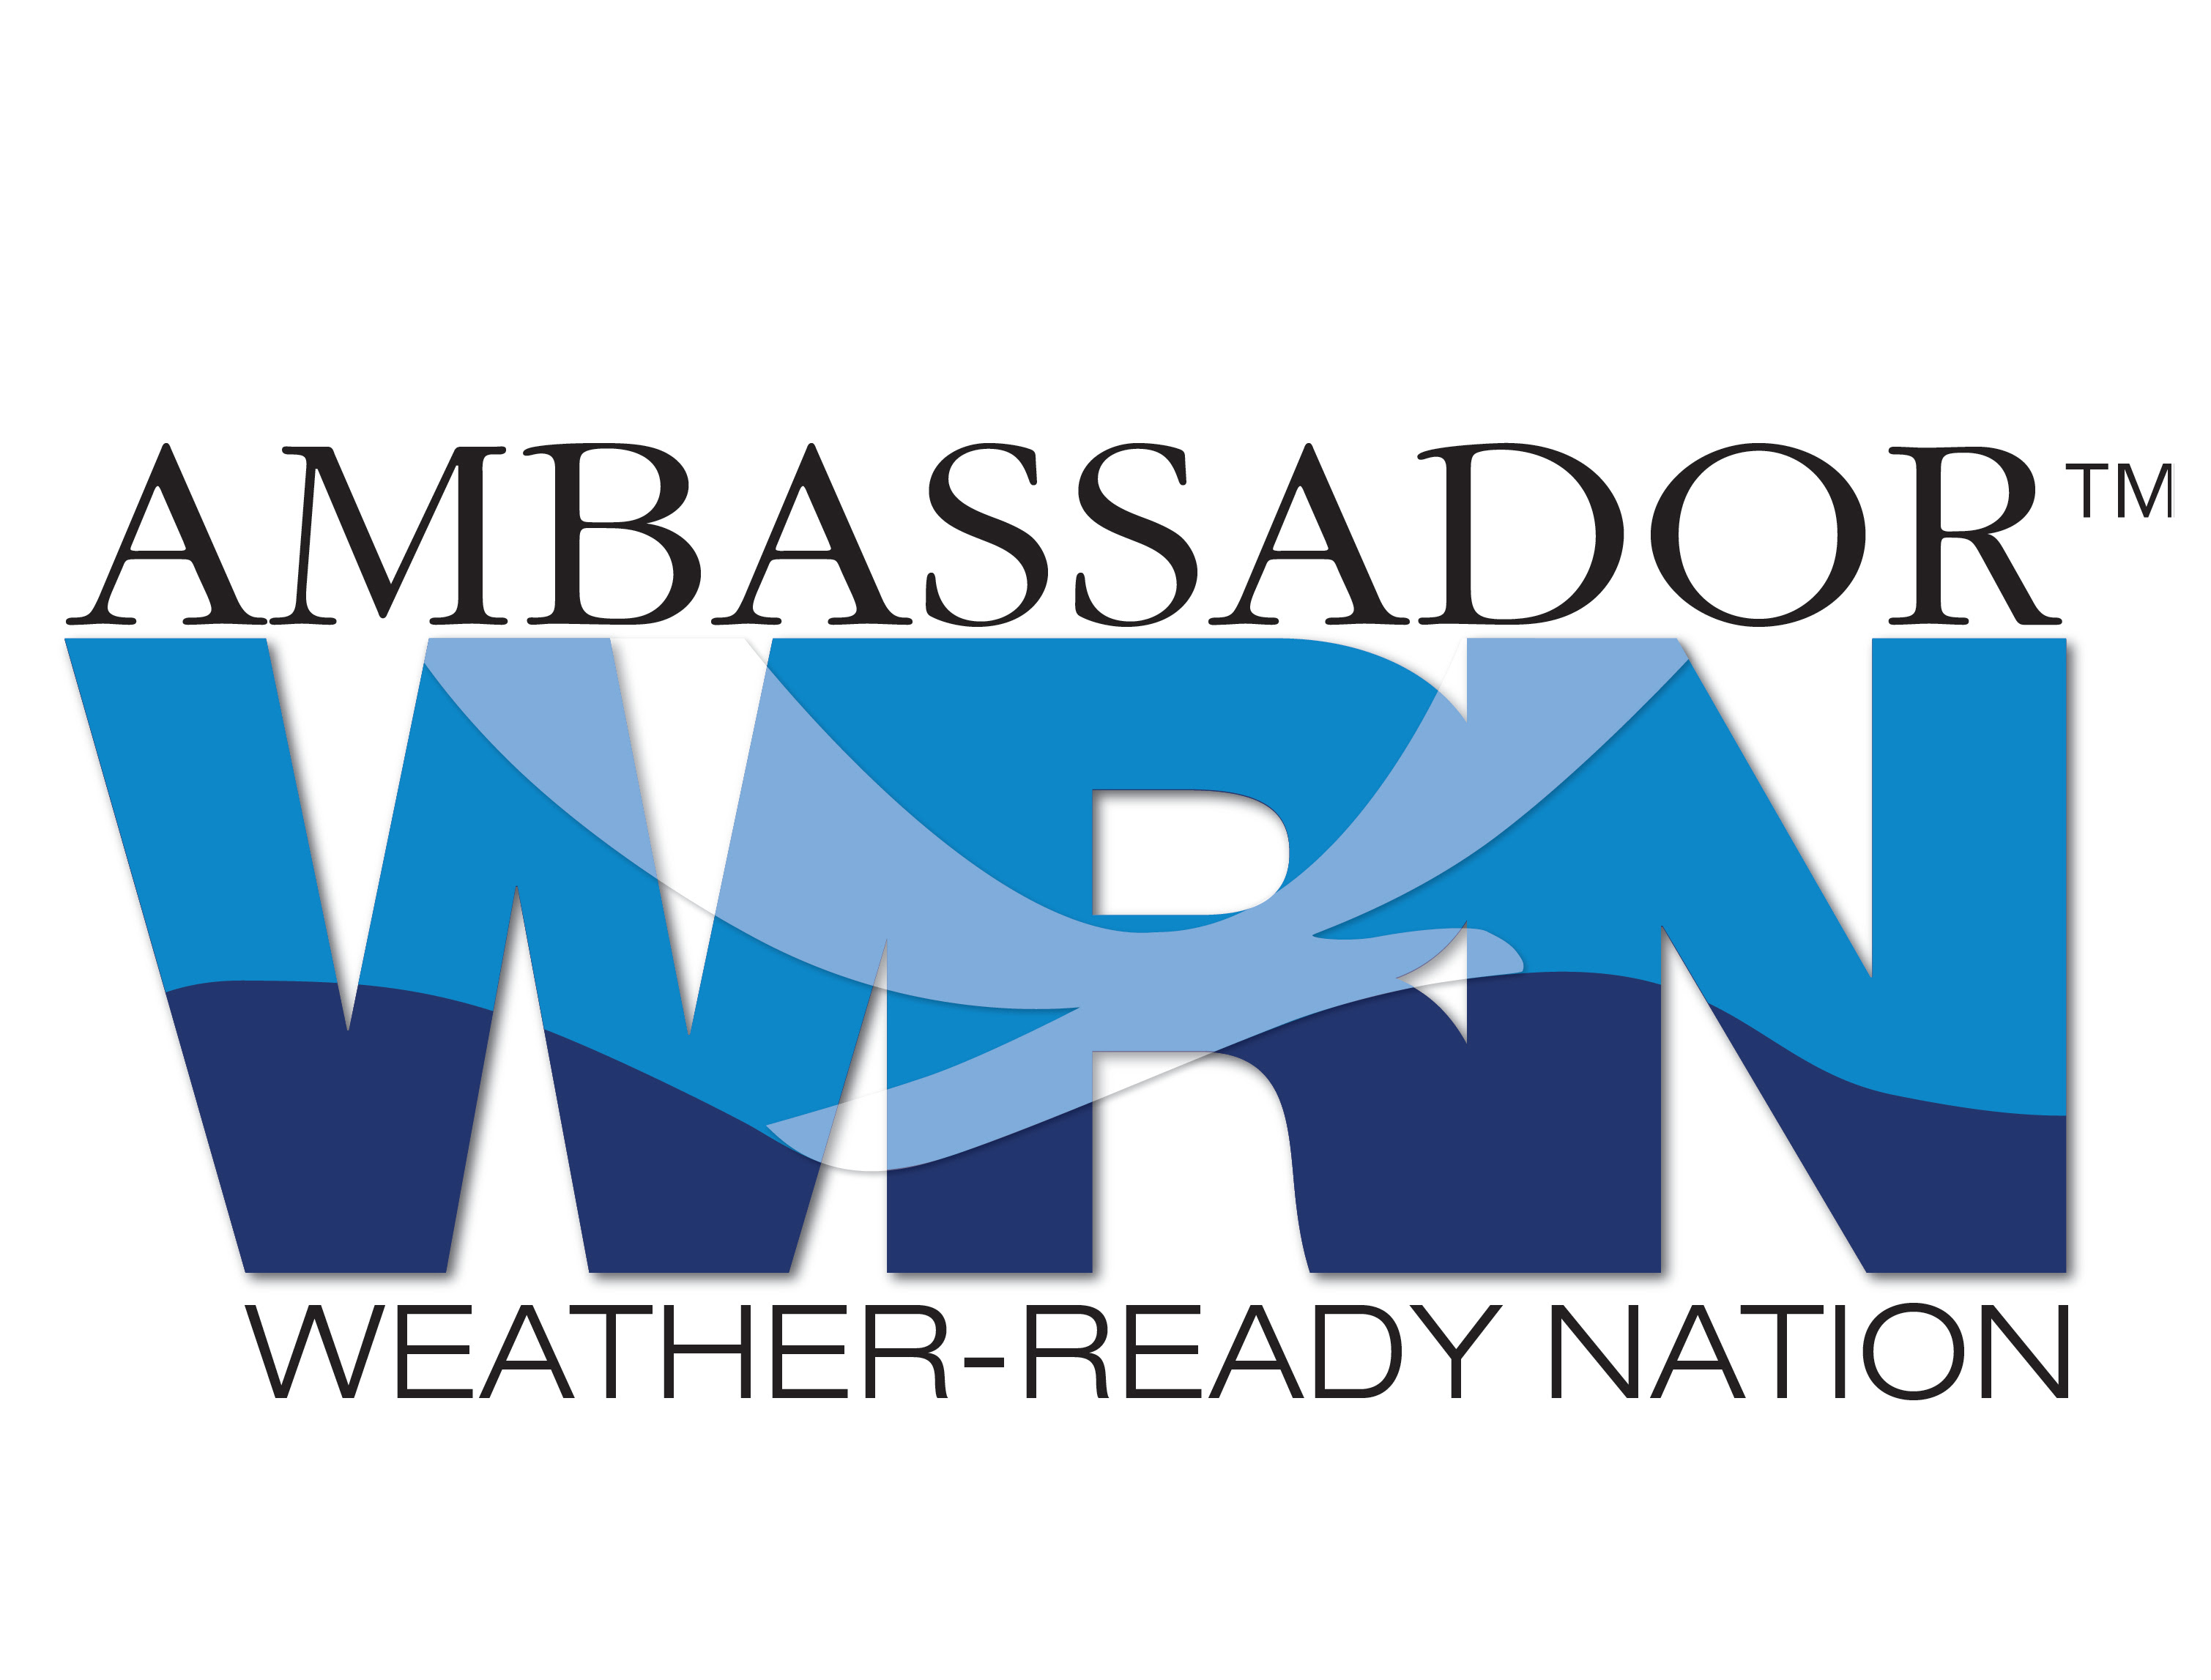 Logotipo do Embaixador da nação pronto para o clima.